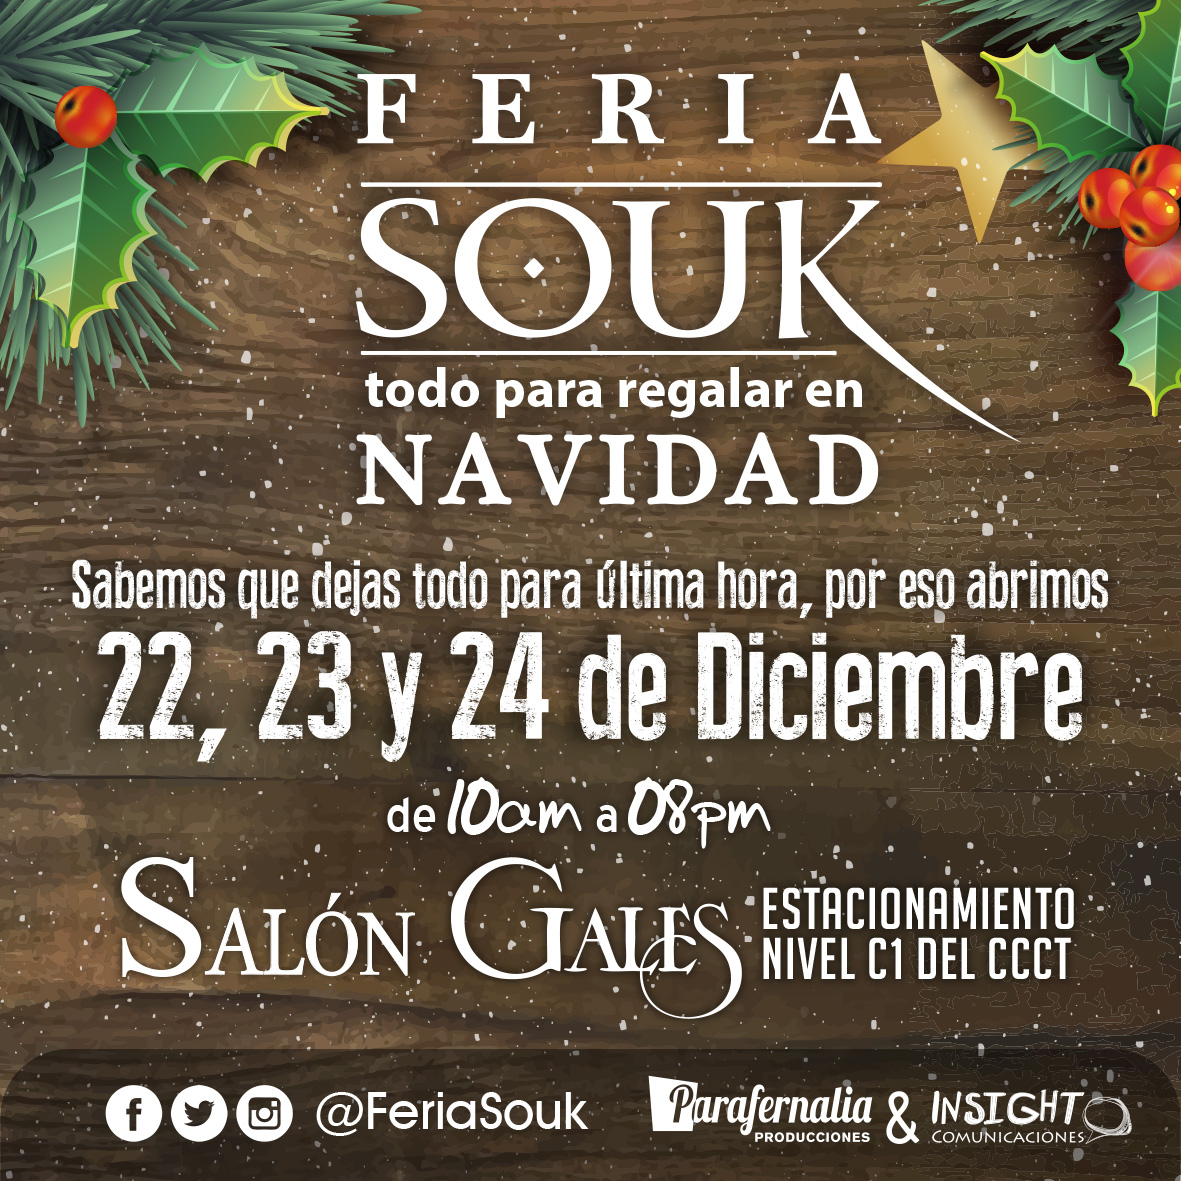 Cuarta Edición De Feria Souk: ¡Todo para la Navidad! En colaboración con Unicef